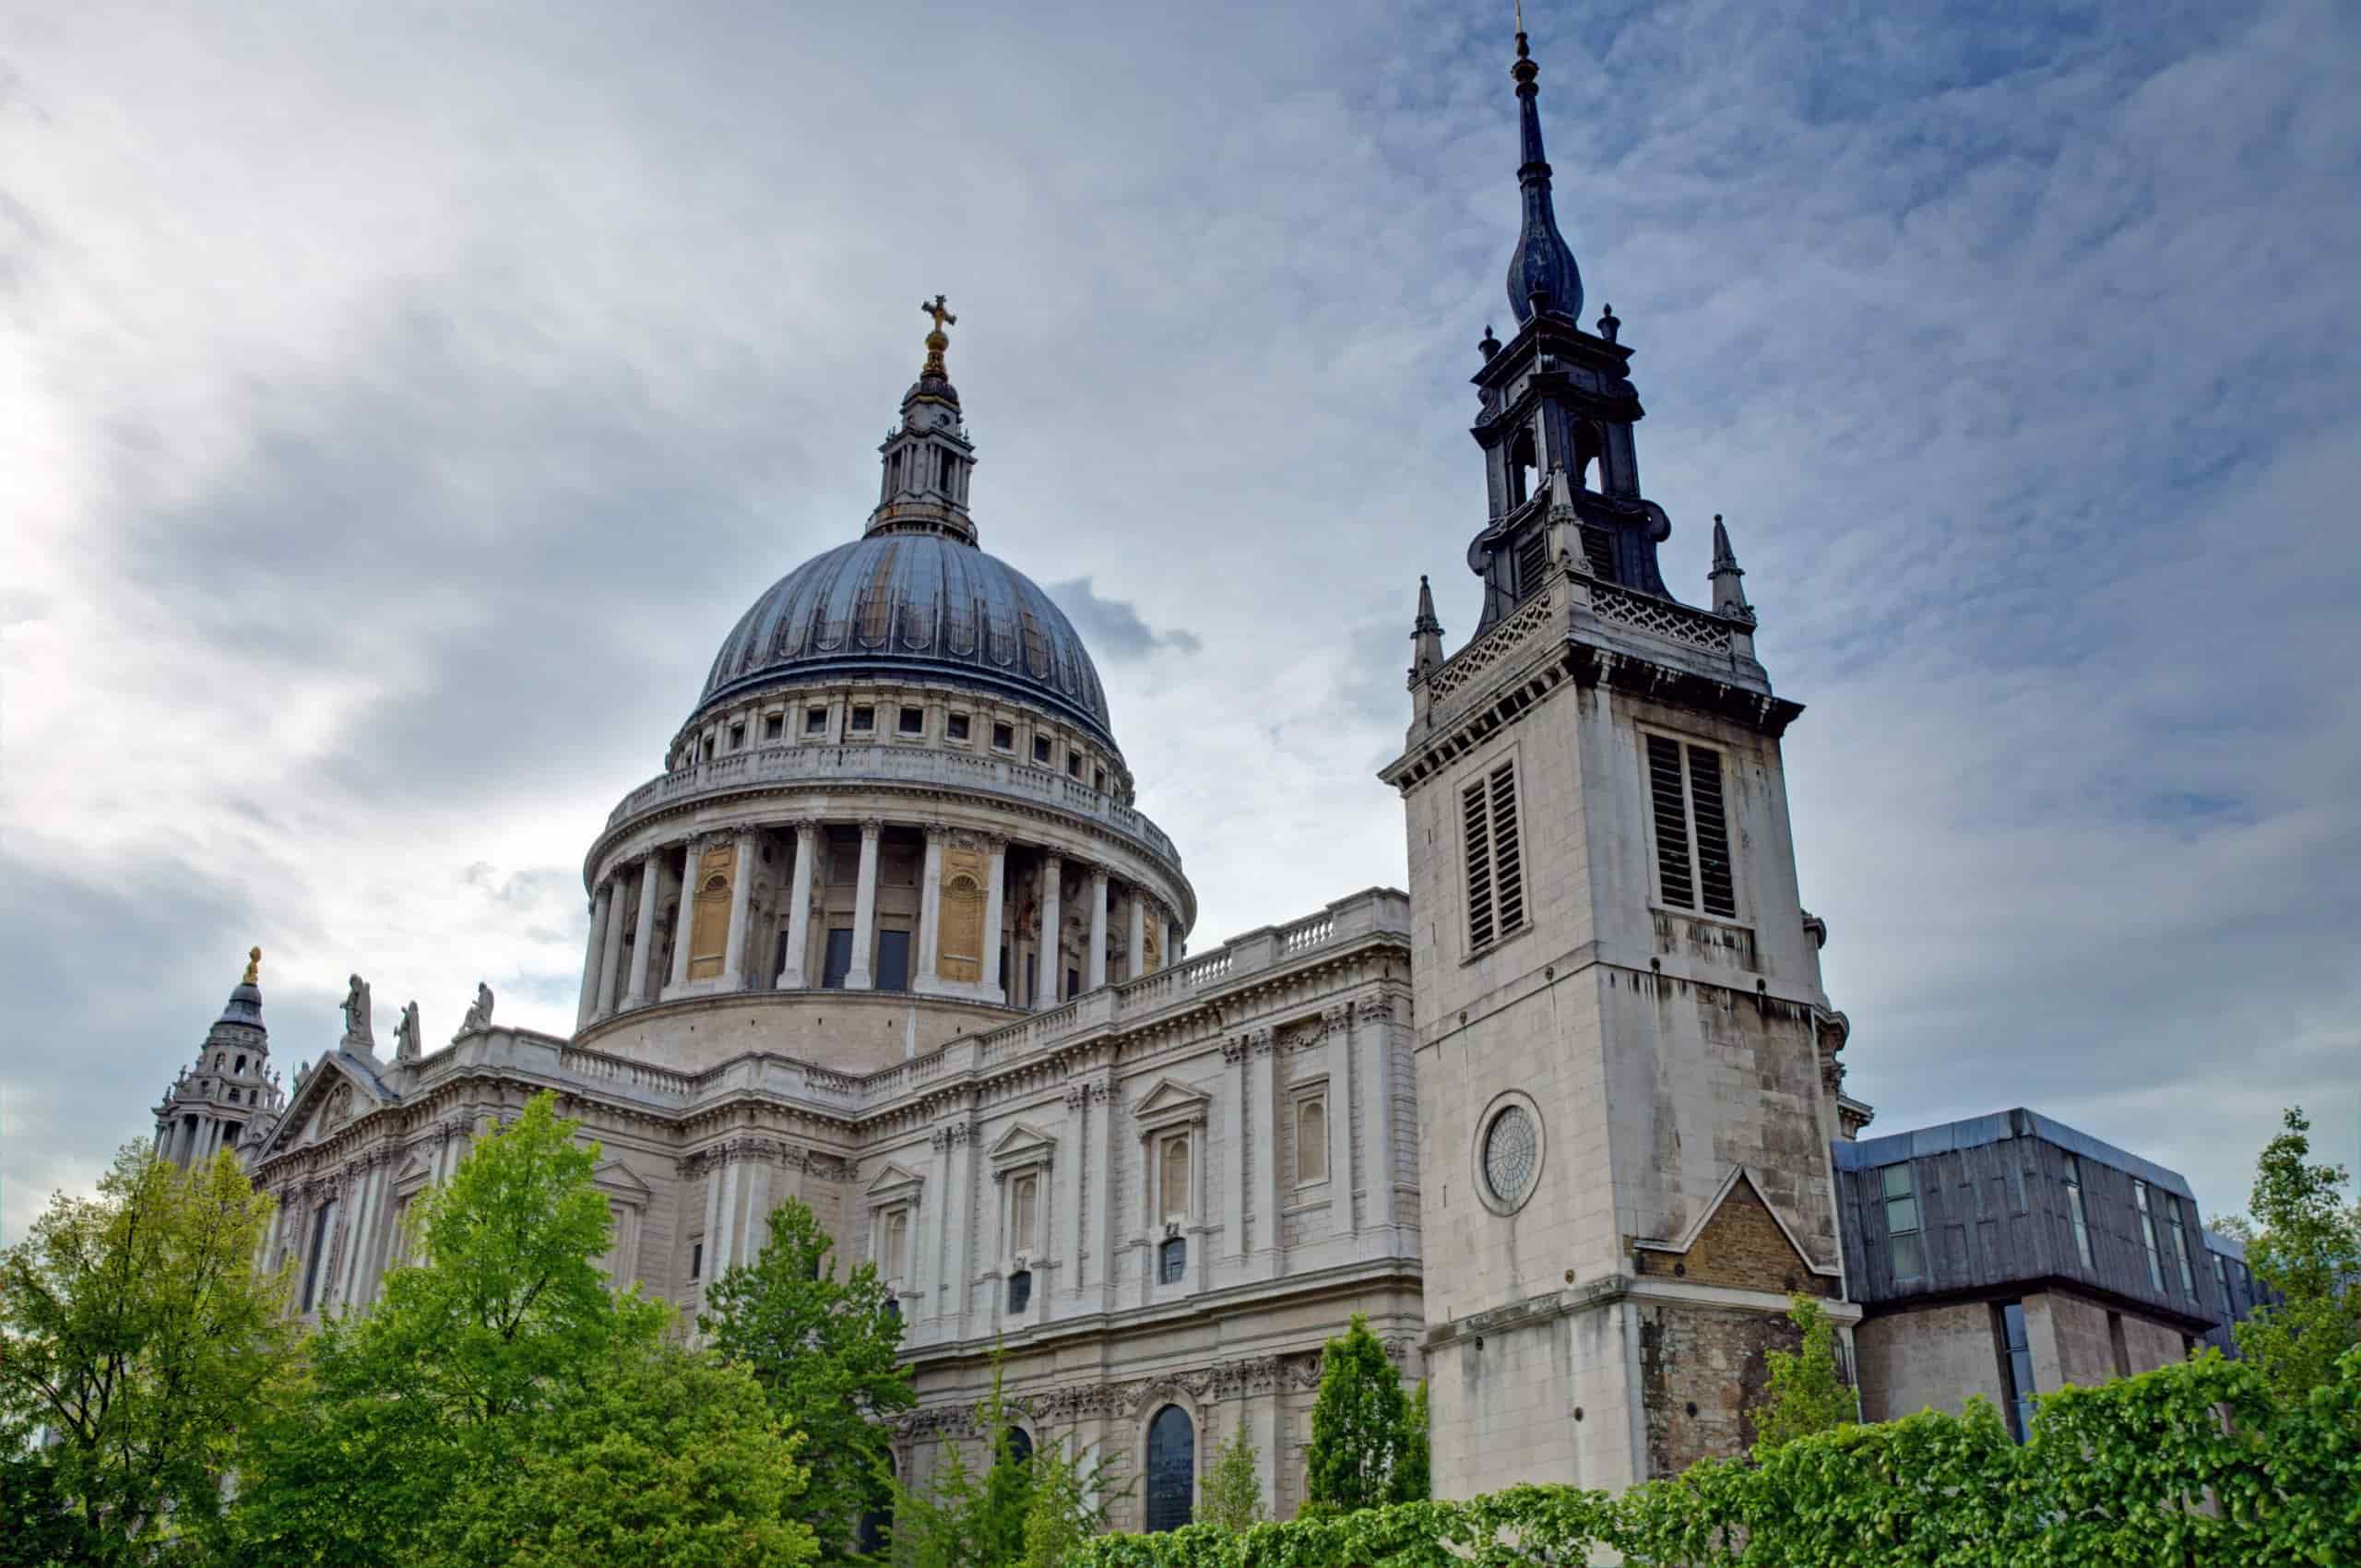 Katedraly St Paul ao Londres PYLVCF4 min scaled min